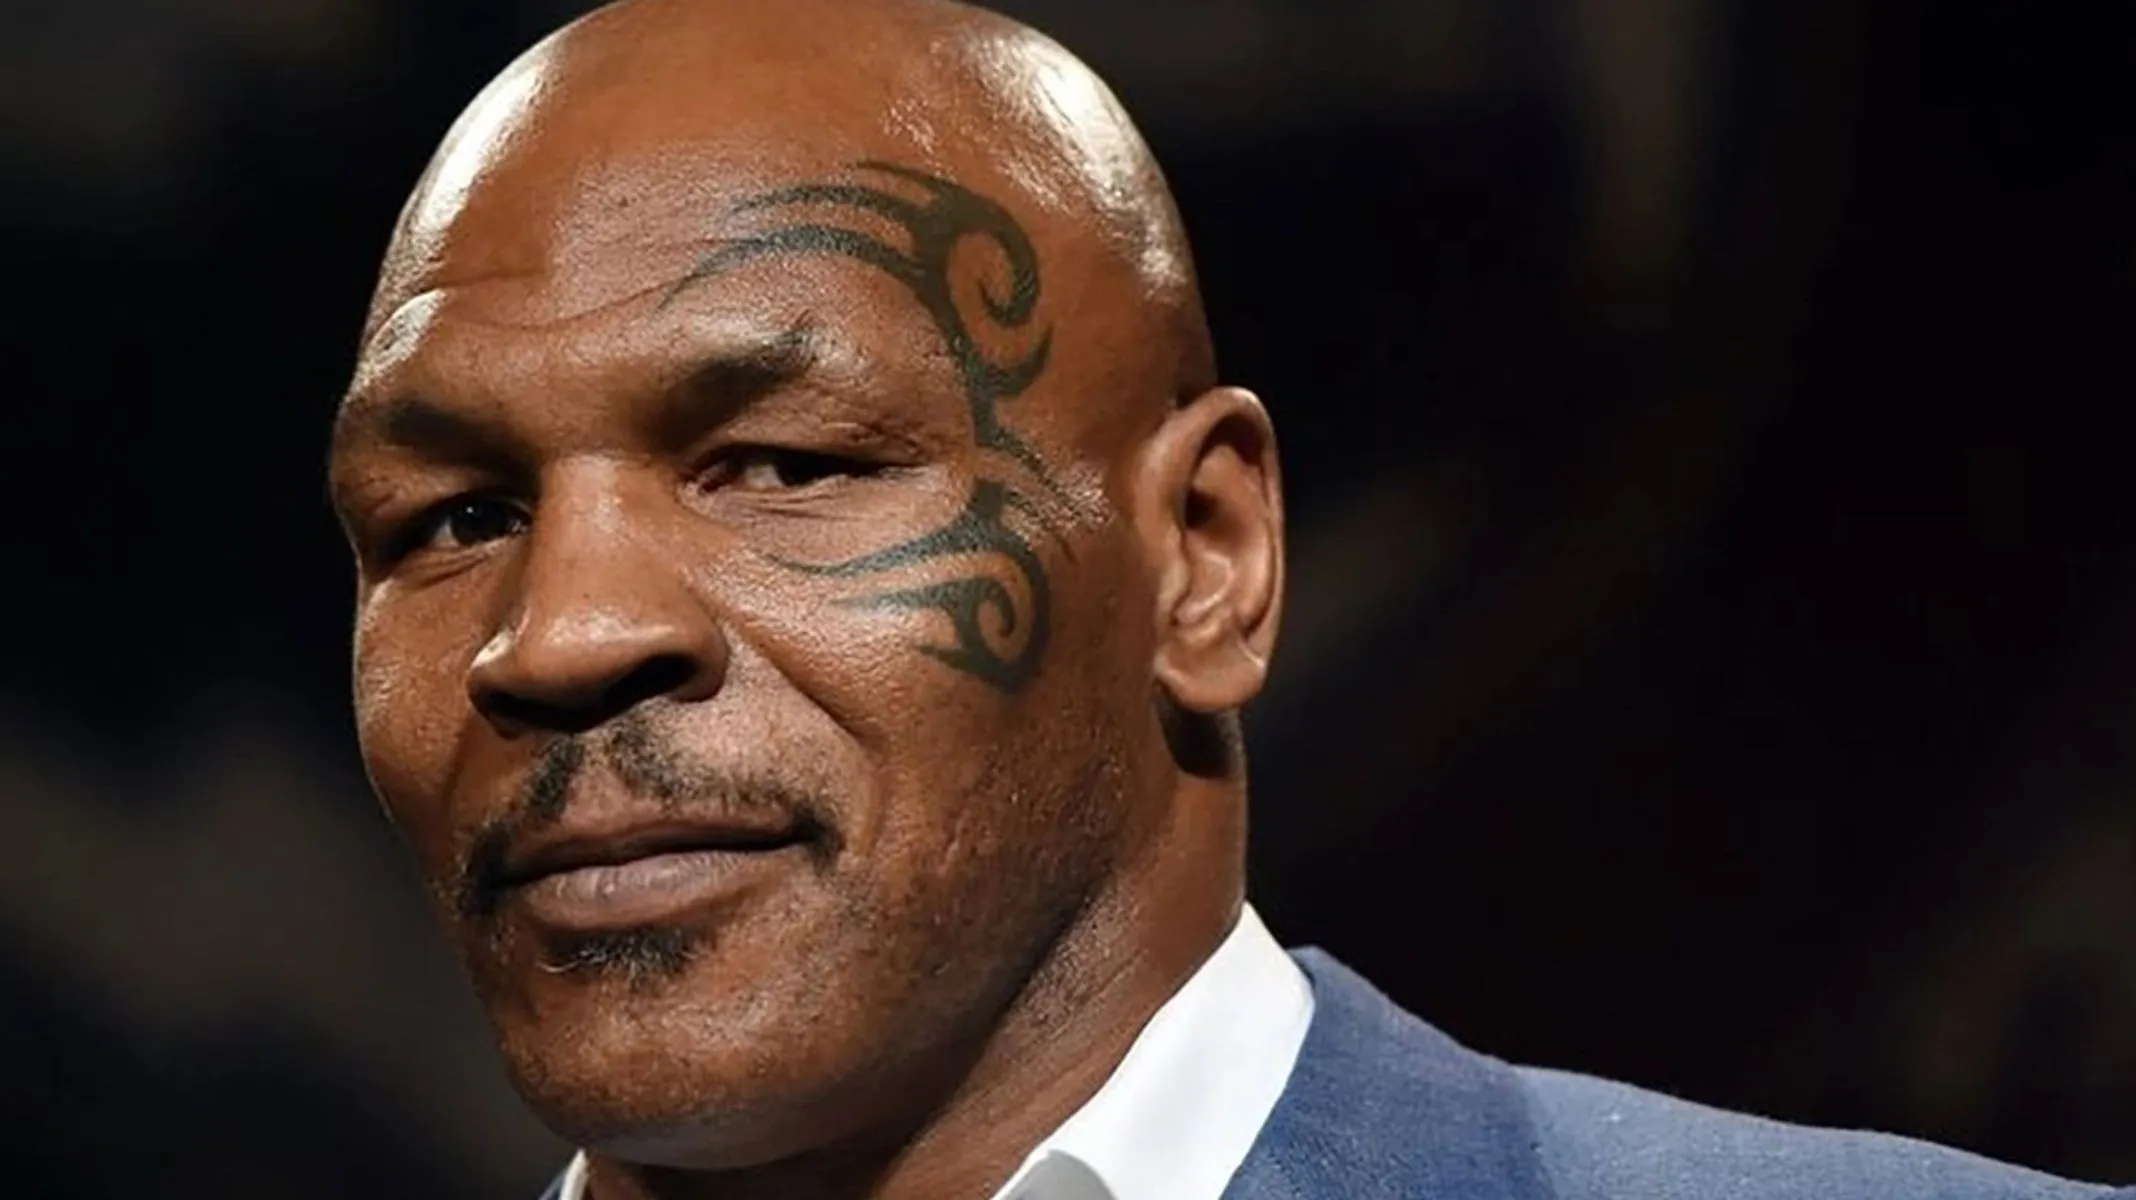 Mike Tyson's health raises concerns